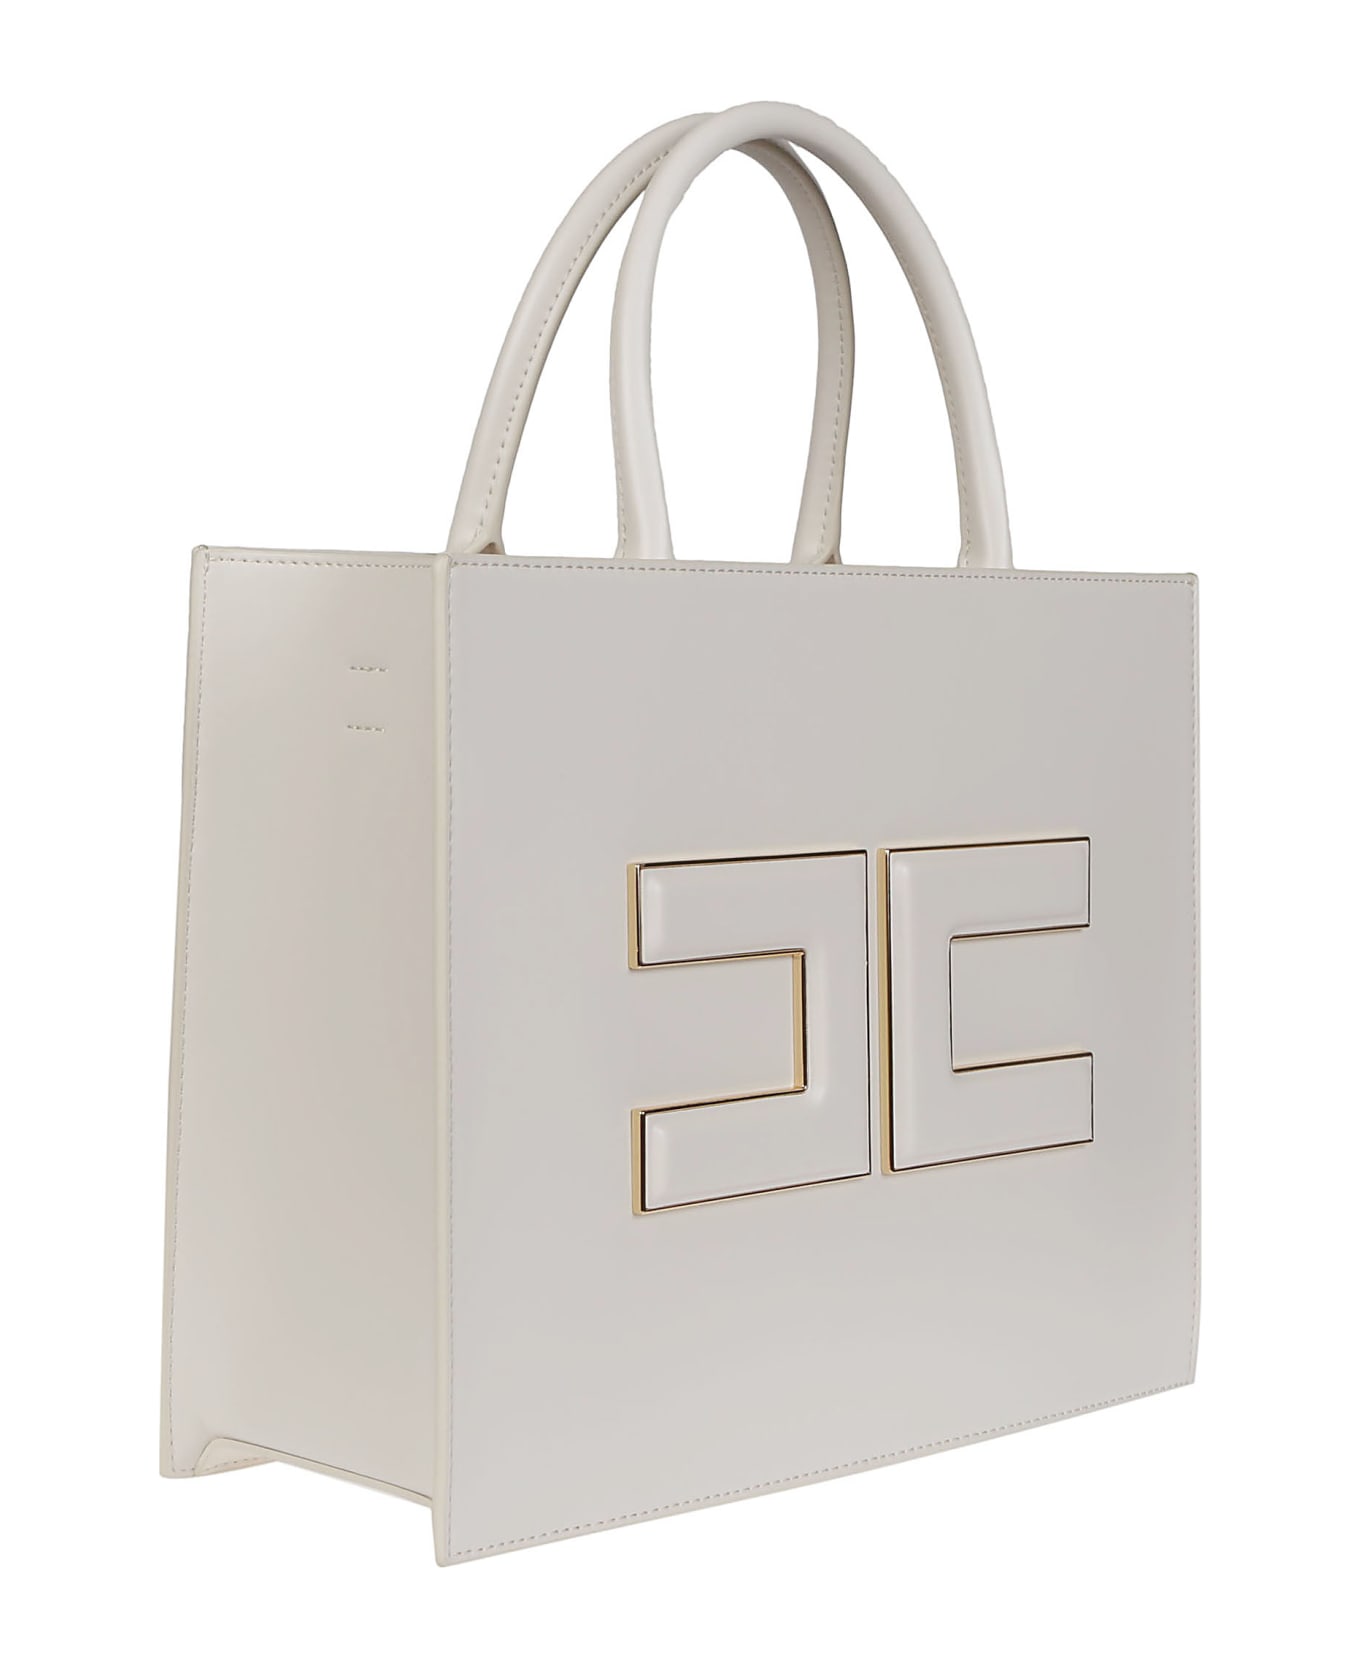 Elisabetta Franchi Medium Shopping Bag - Burro